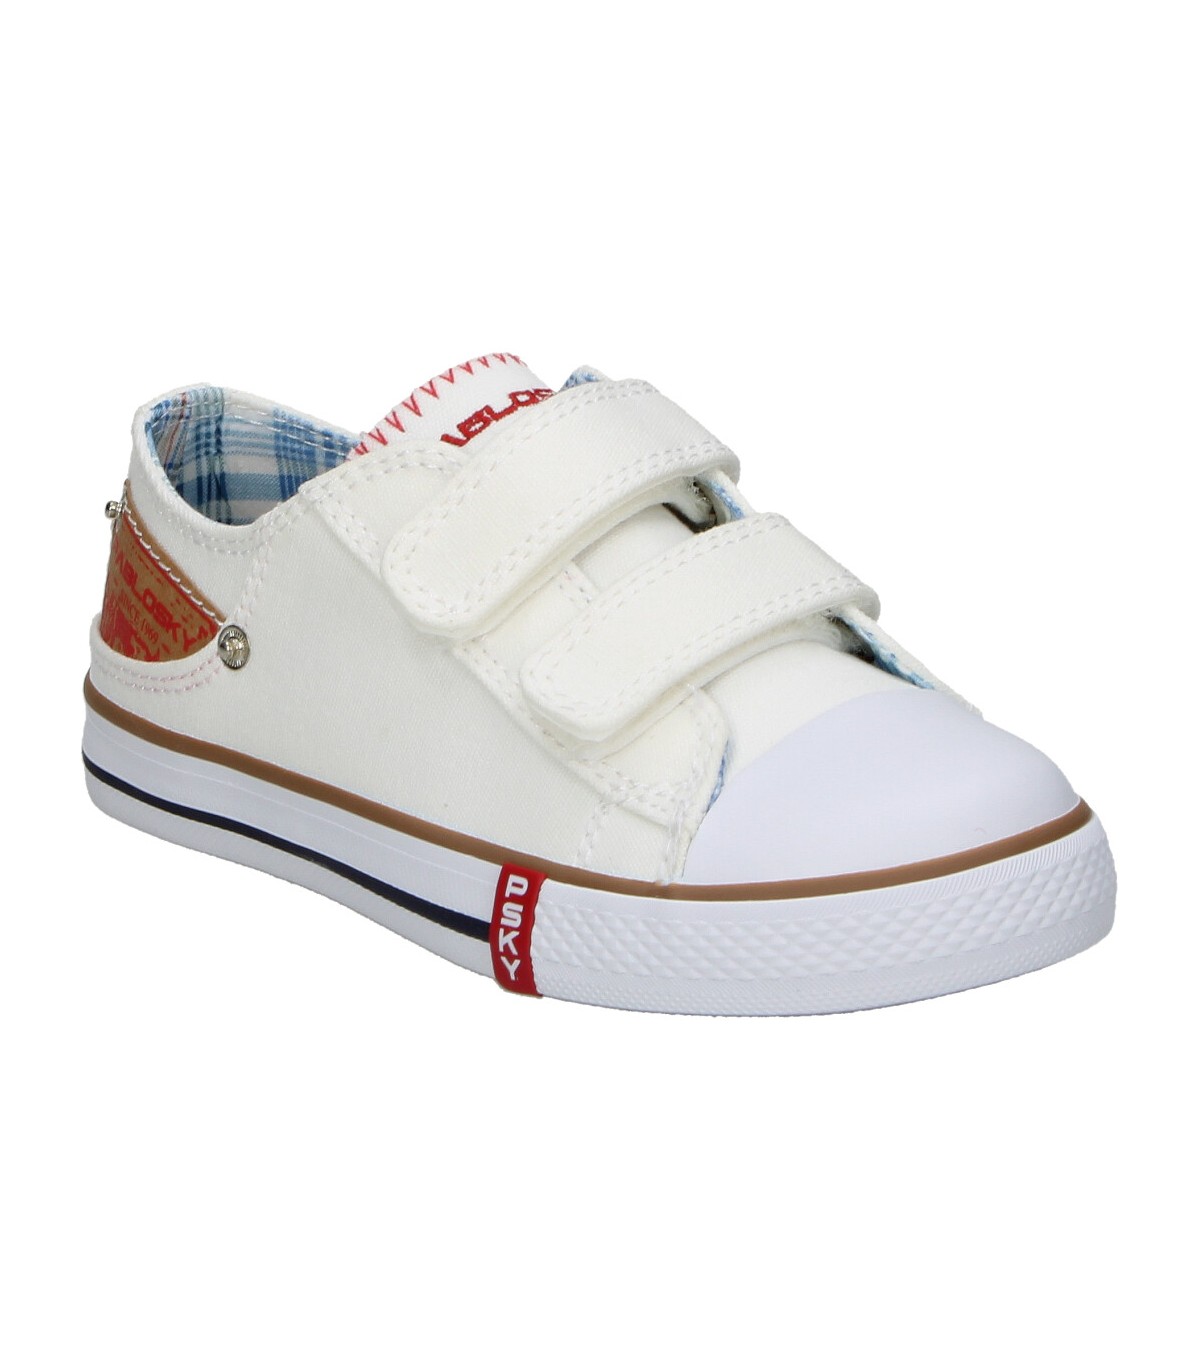 Zapatillas blancas con velcro para niño Pablosky 967400. Envío 24h-72h.